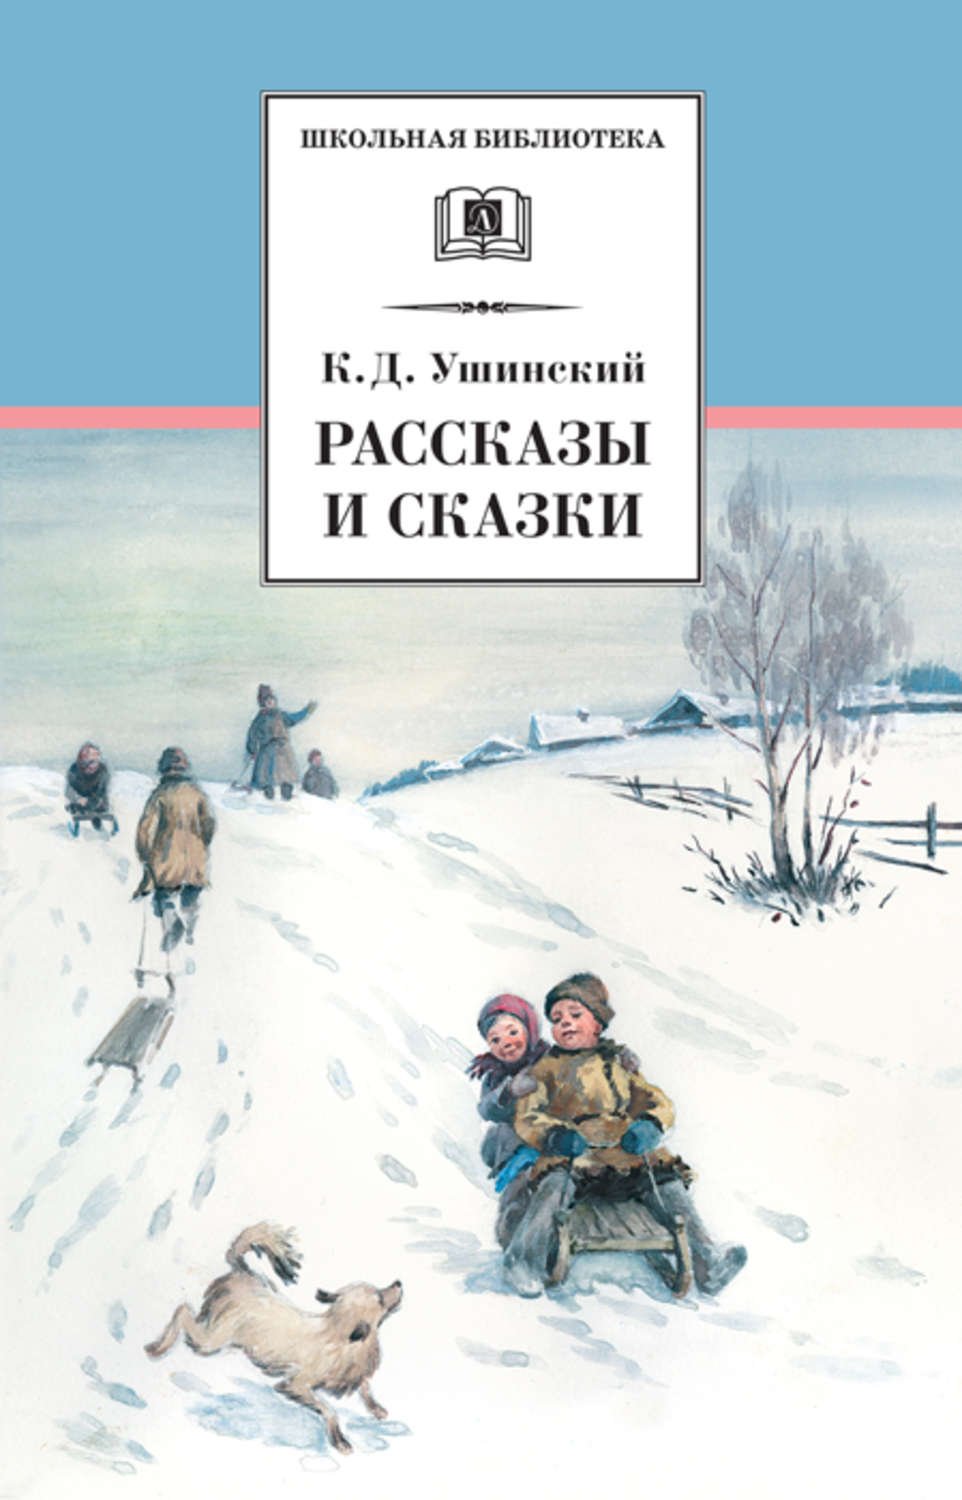 Рассказы и сказки - К.Д. Ушинский